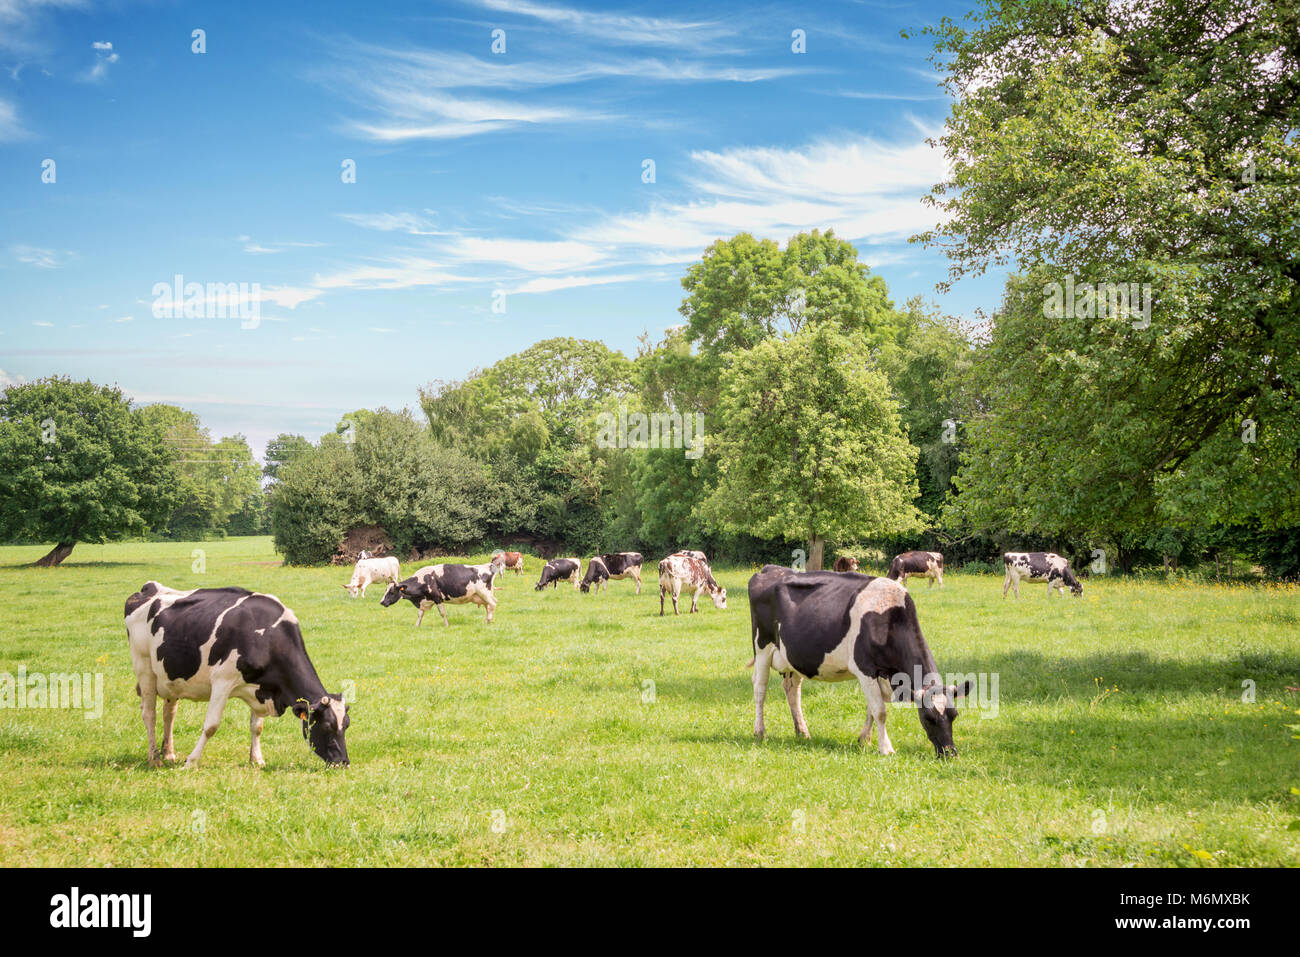 Norman mucche al pascolo su erboso campo verde con alberi in una luminosa giornata di sole in Normandia, Francia. Estate paesaggio di campagna e pascolo per le vacche Foto Stock